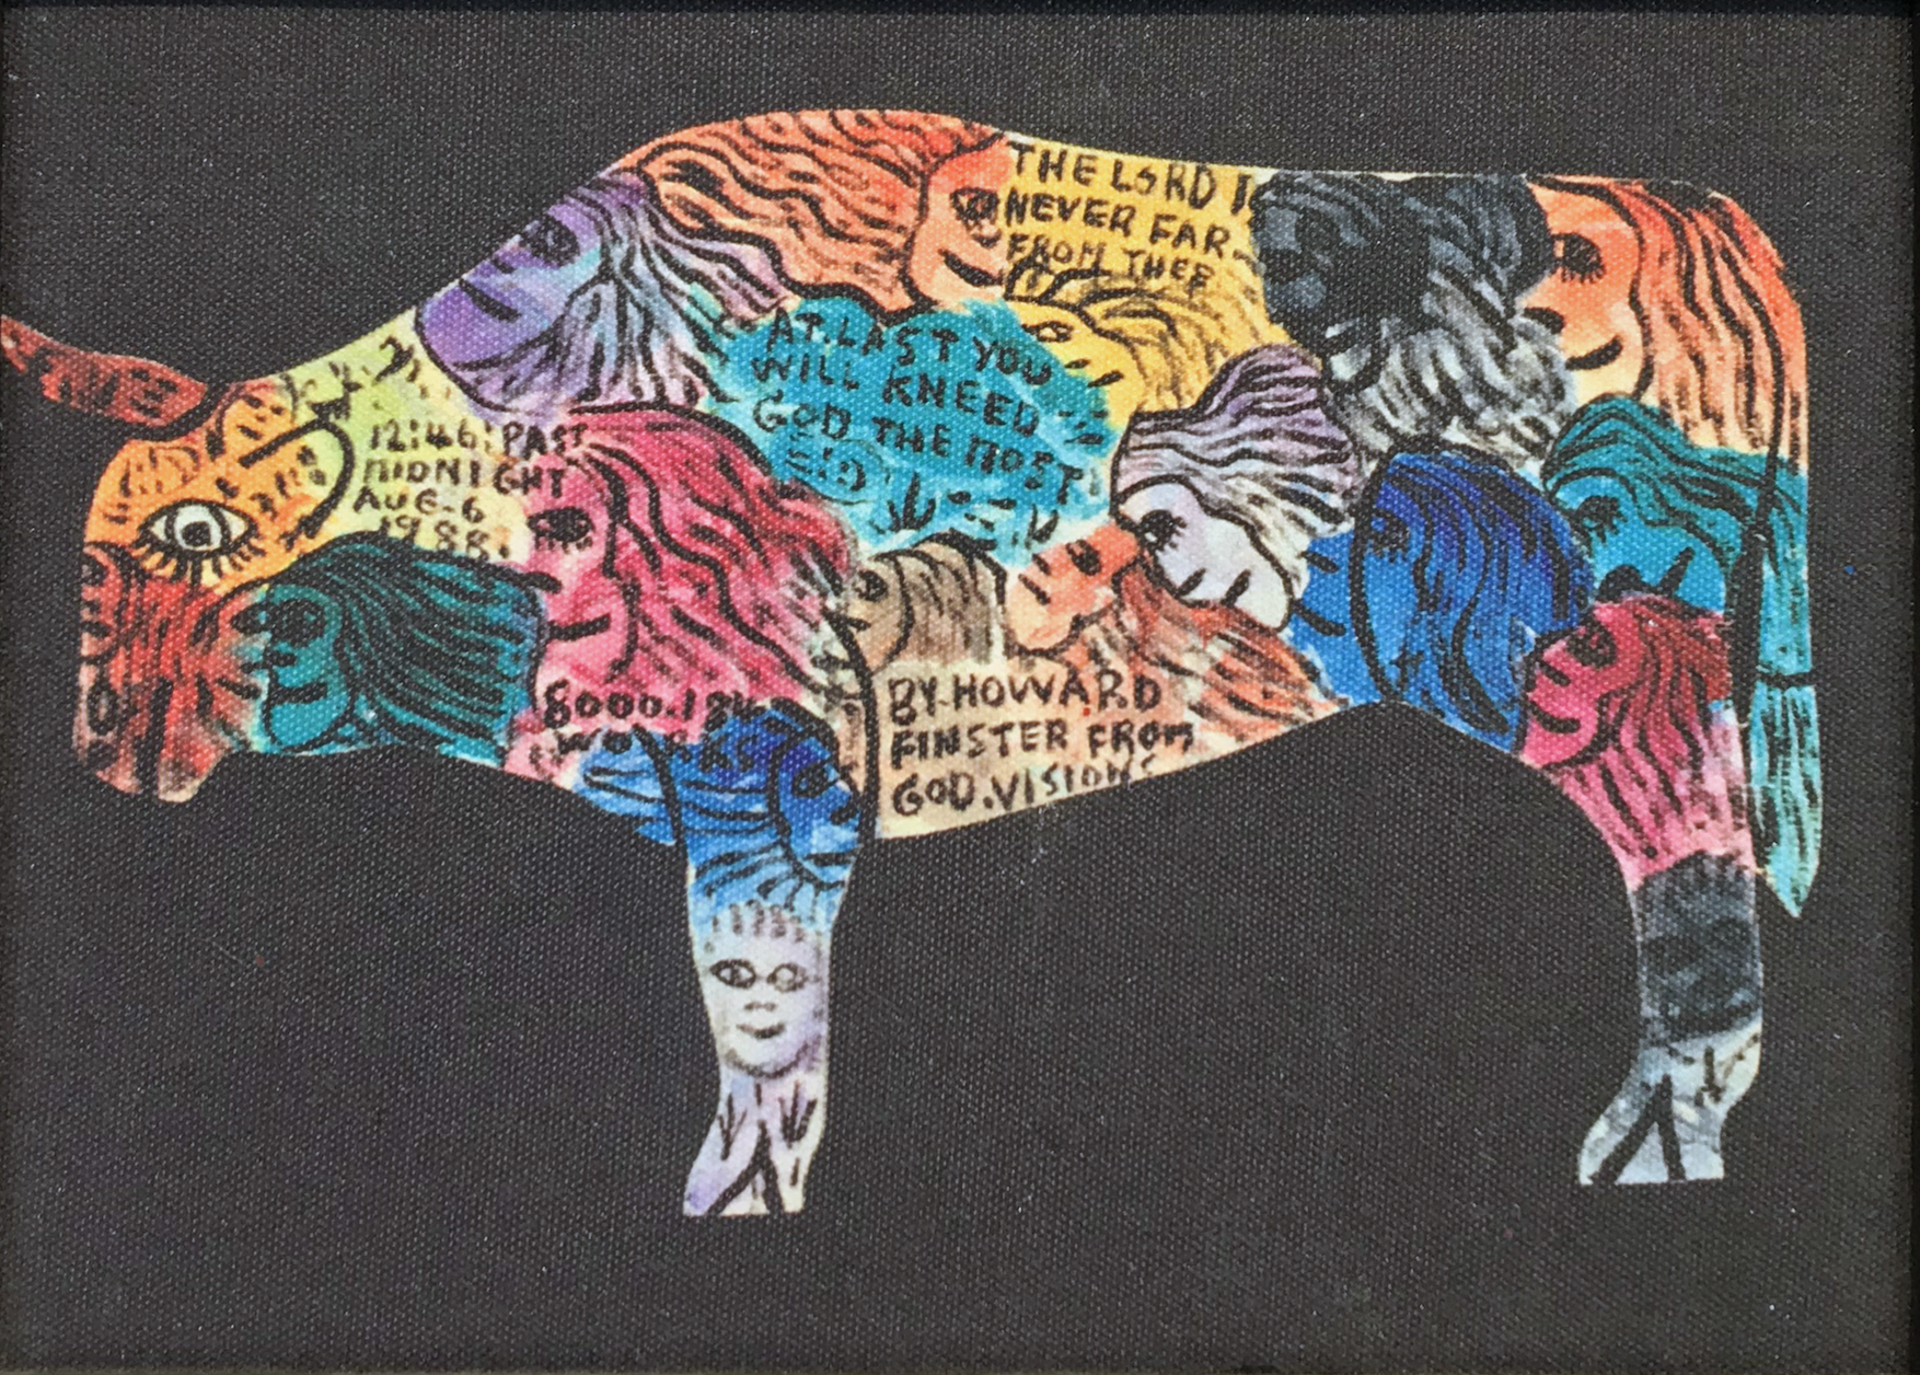 Bull by Howard Finster